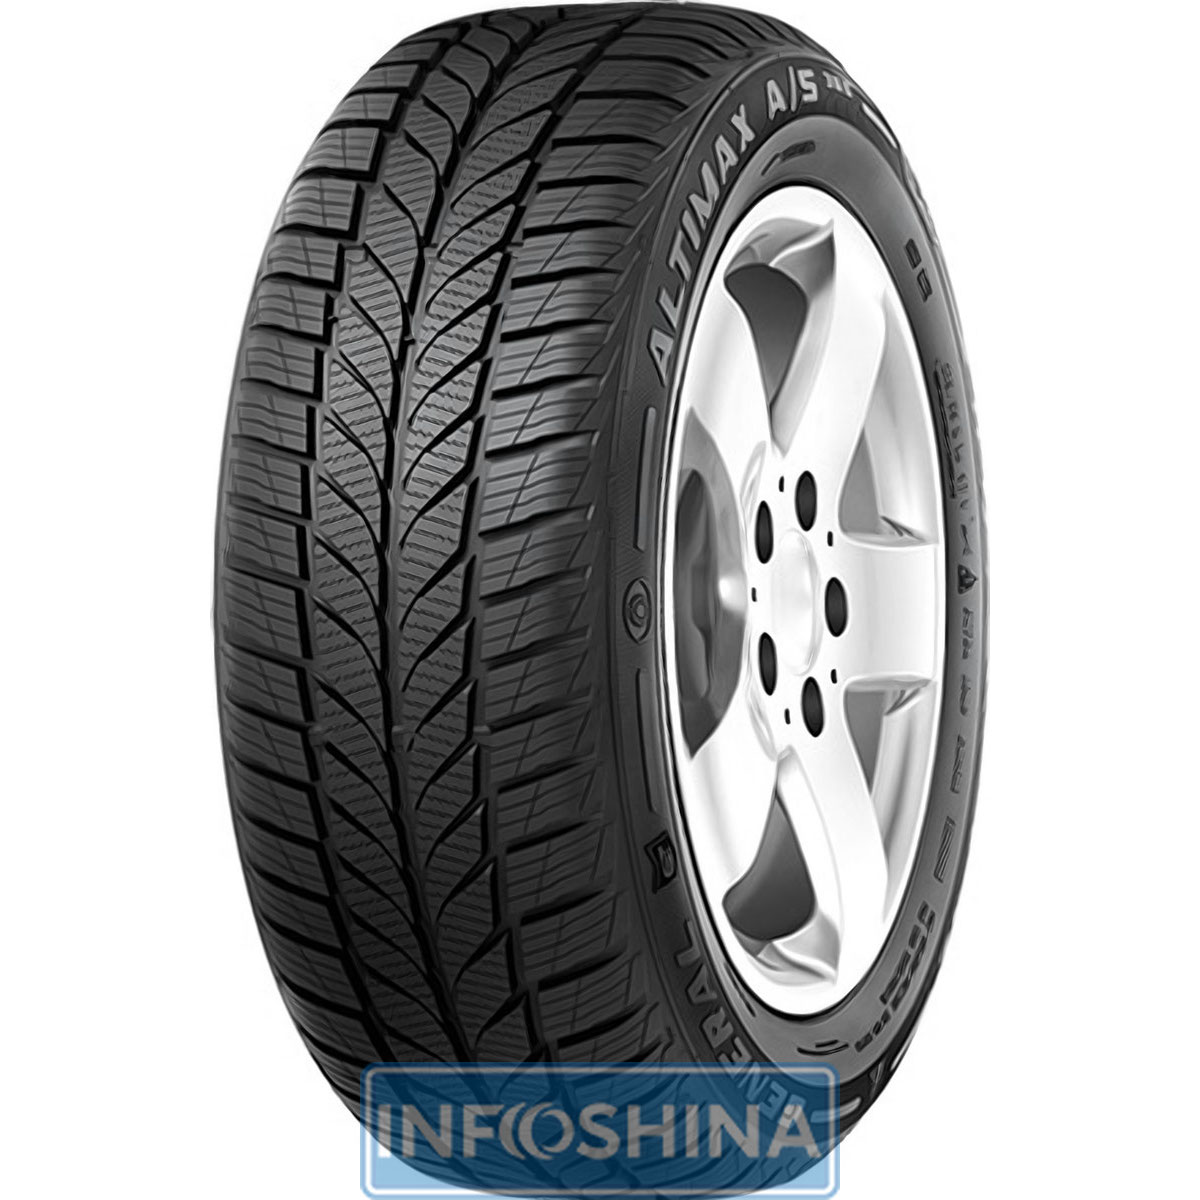 Купить шины General Tire Altimax A/S 365 205/55 R16 94V